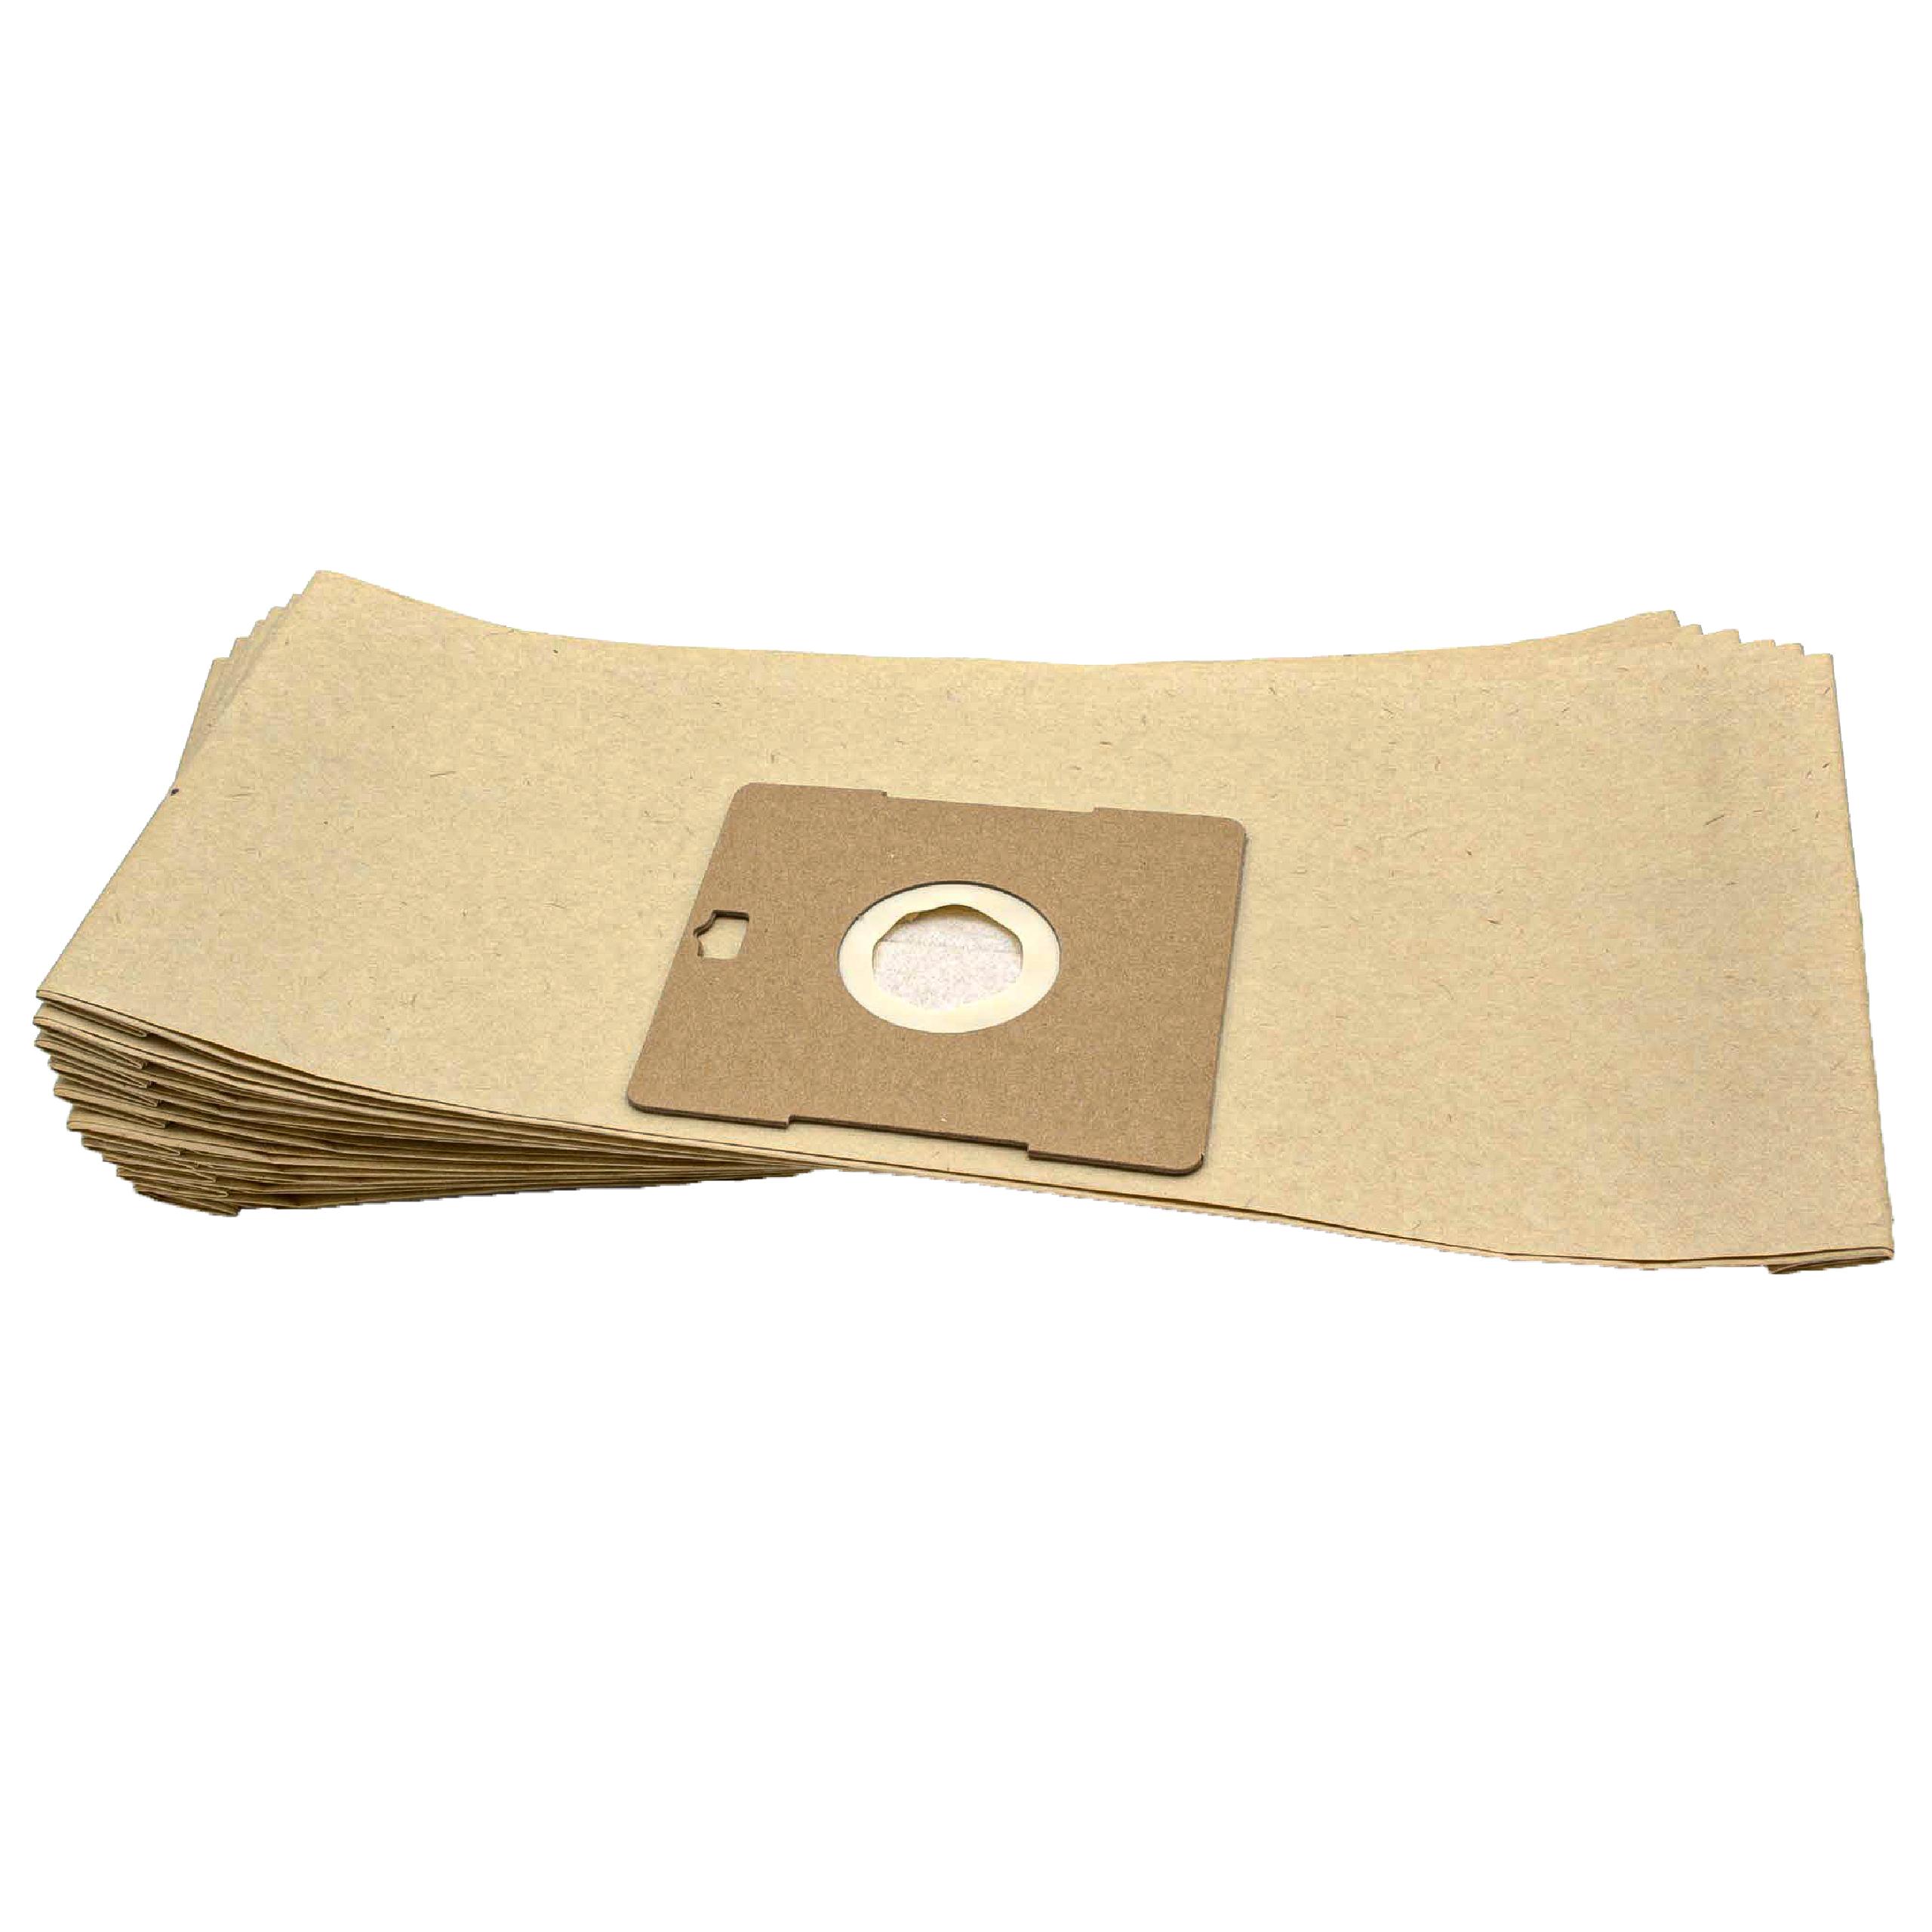 10x Staubsaugerbeutel als Ersatz für Grundig Typ G - Hygiene Bag für AEG Staubsauger u.a. - Papier